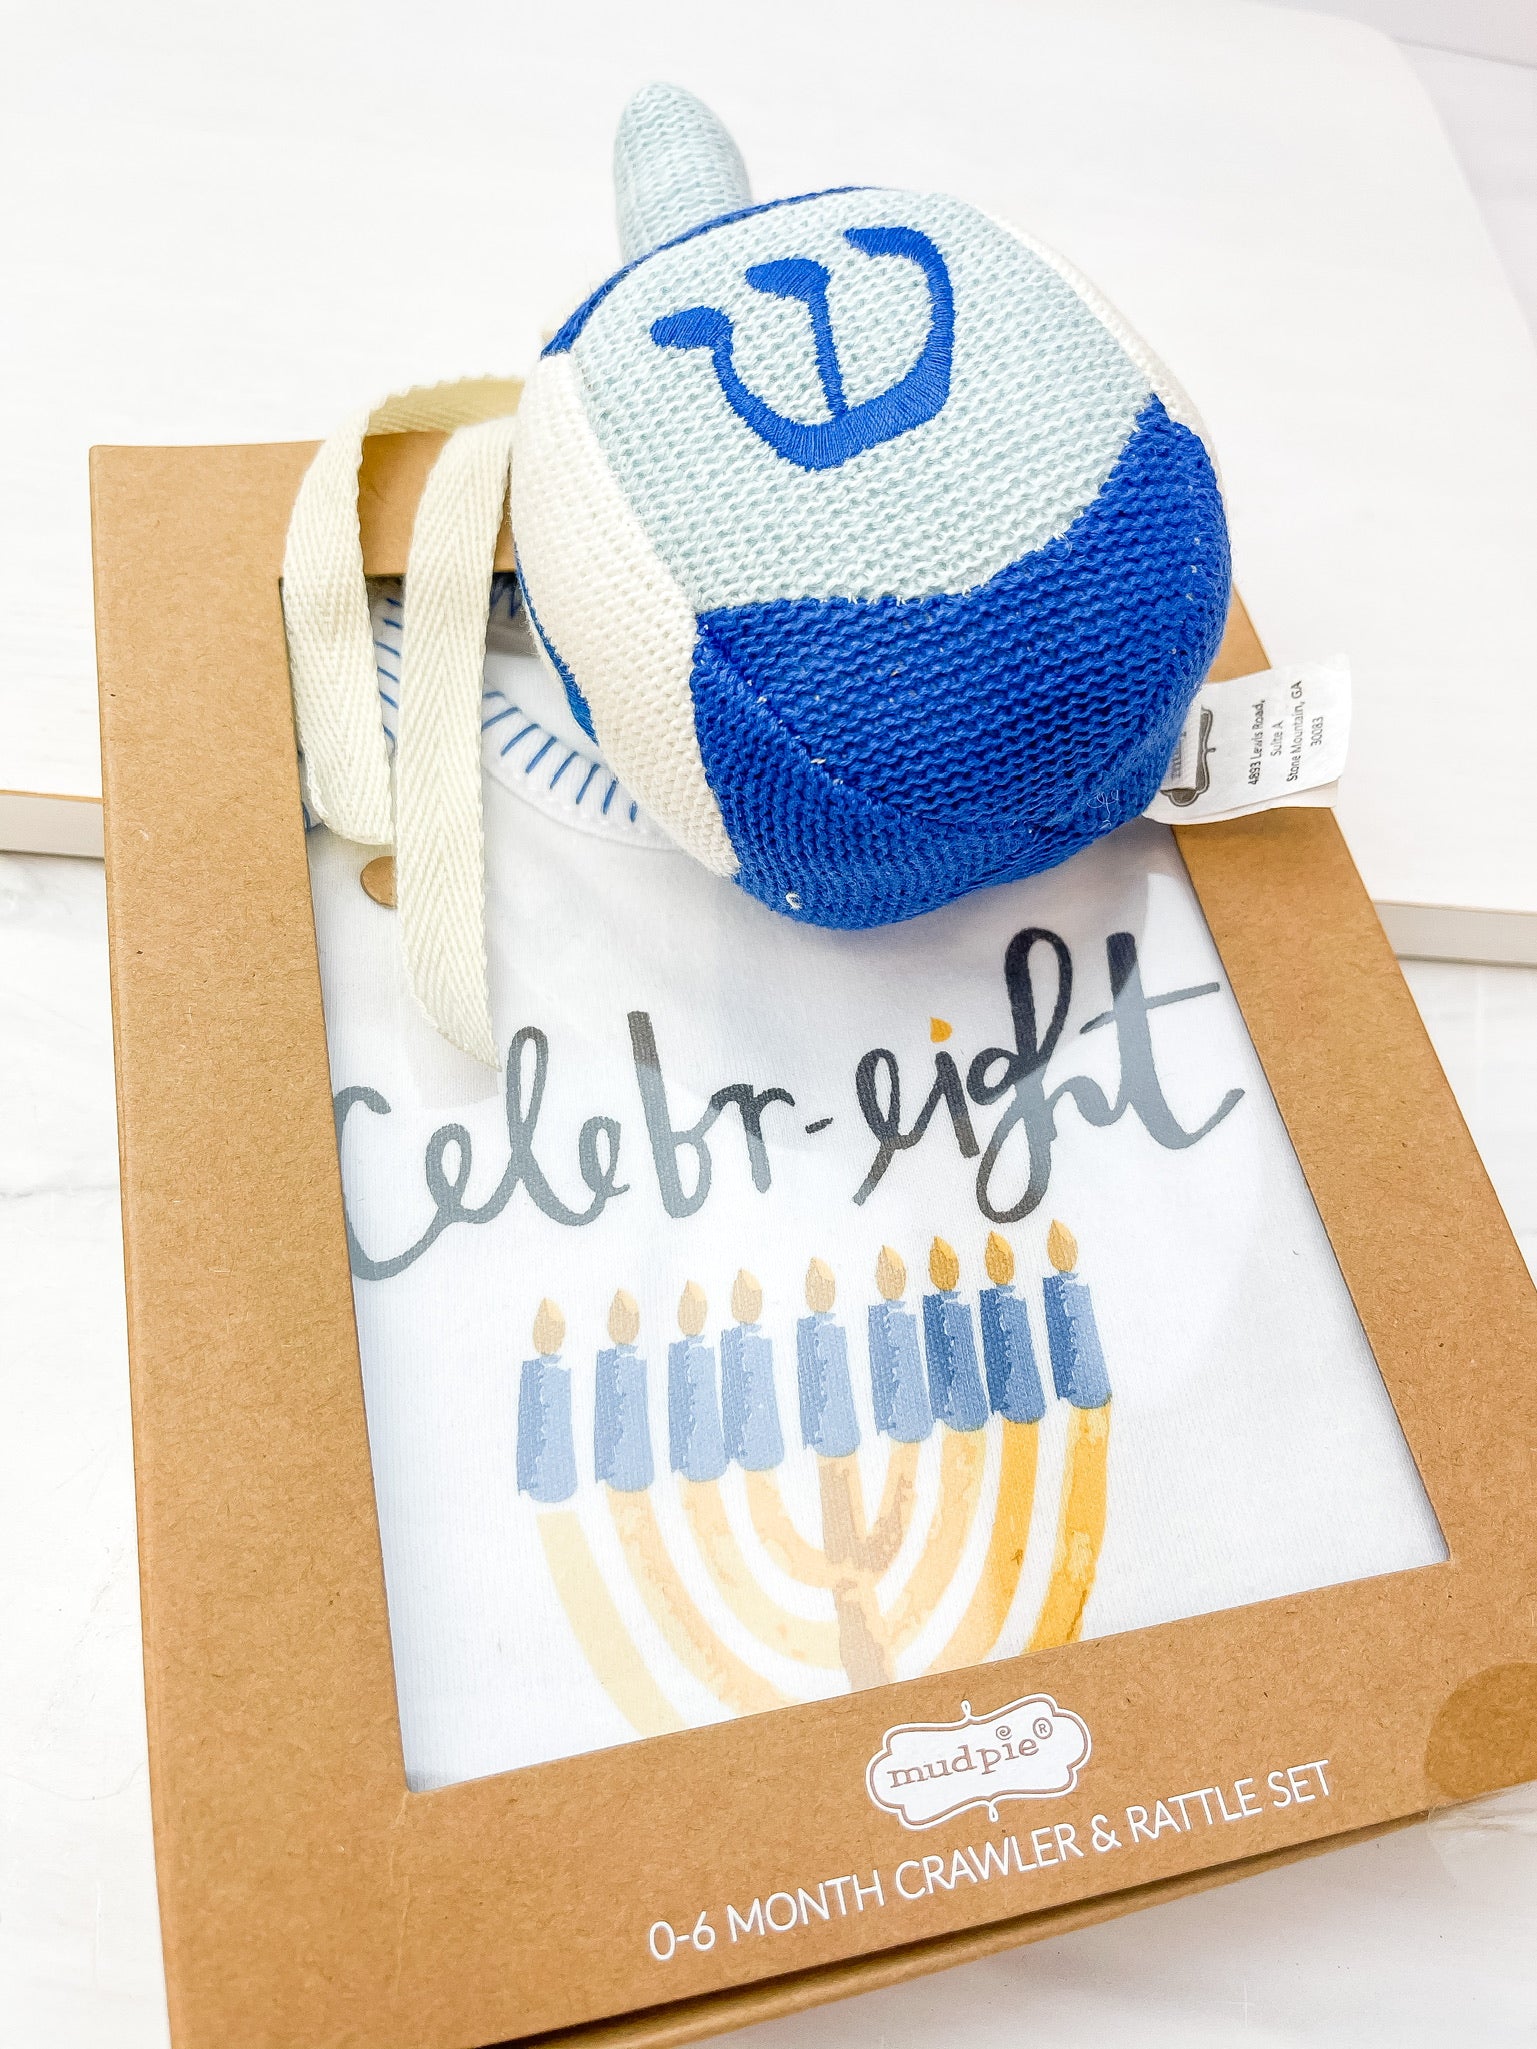 'Celebr-eight' Hanukkah Knit Rattle Gift Set by Mud Pie